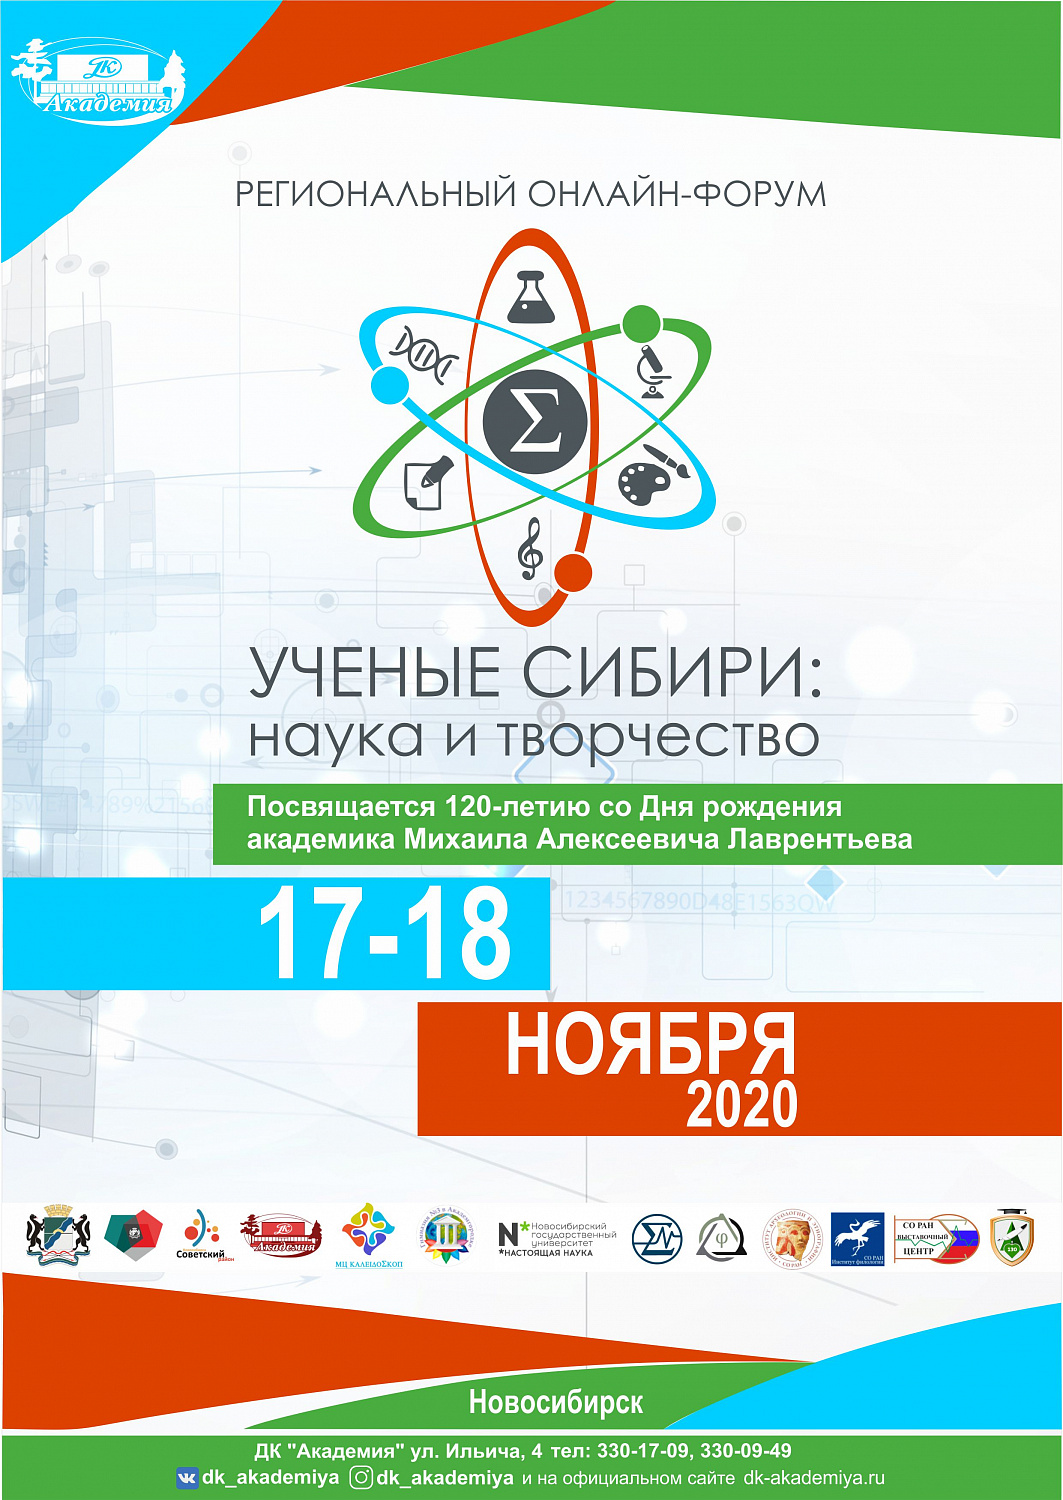 Региональный форум «Ученые Сибири: наука и творчество»